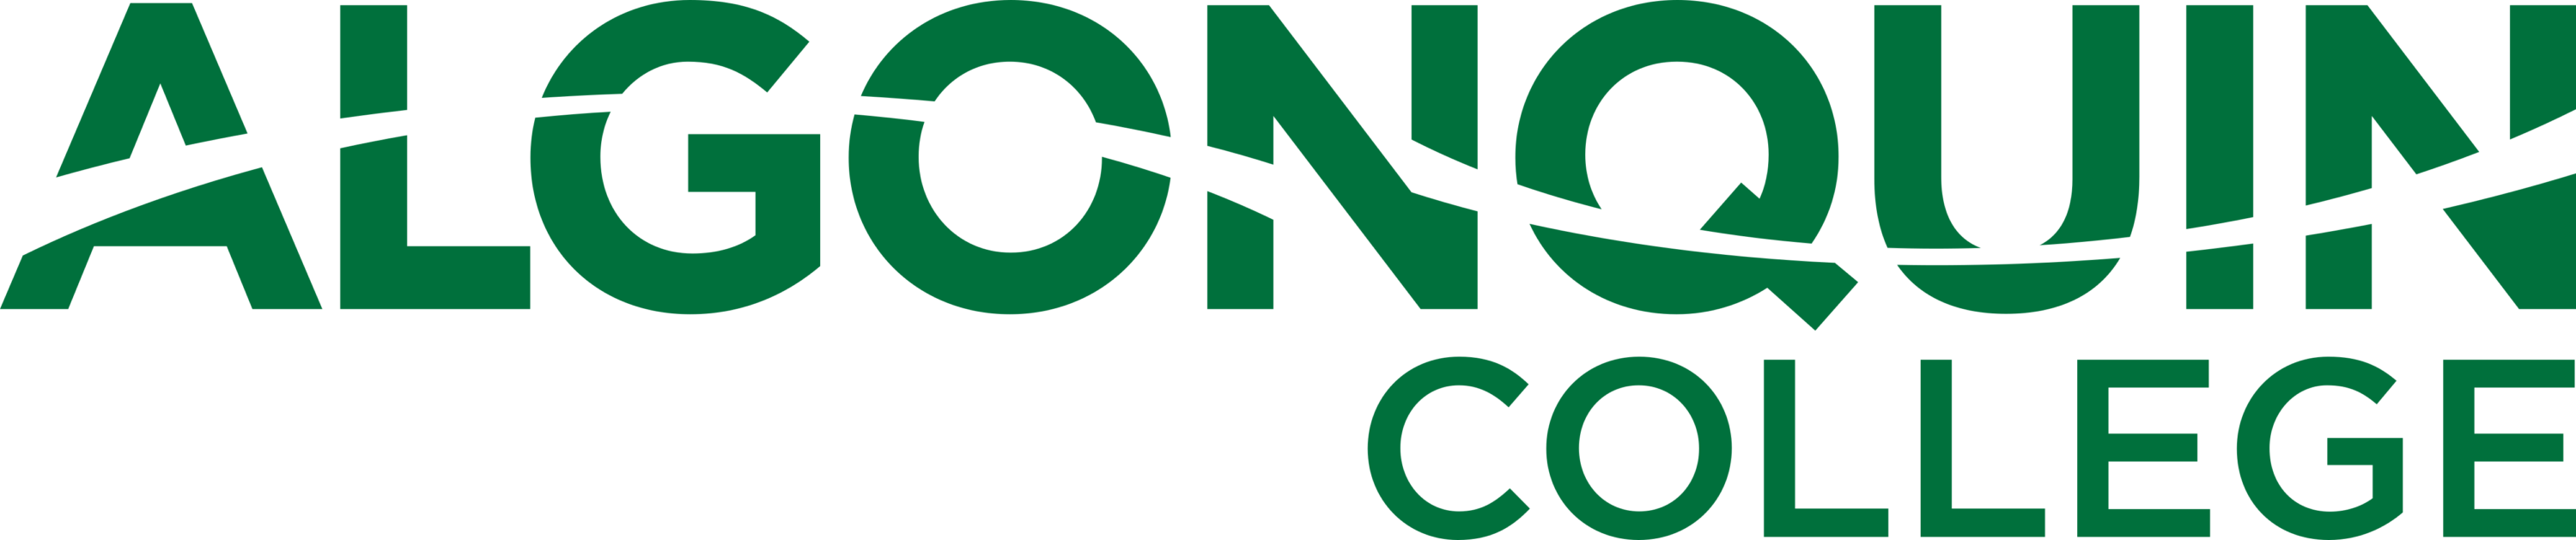 Algonquin College Logo full